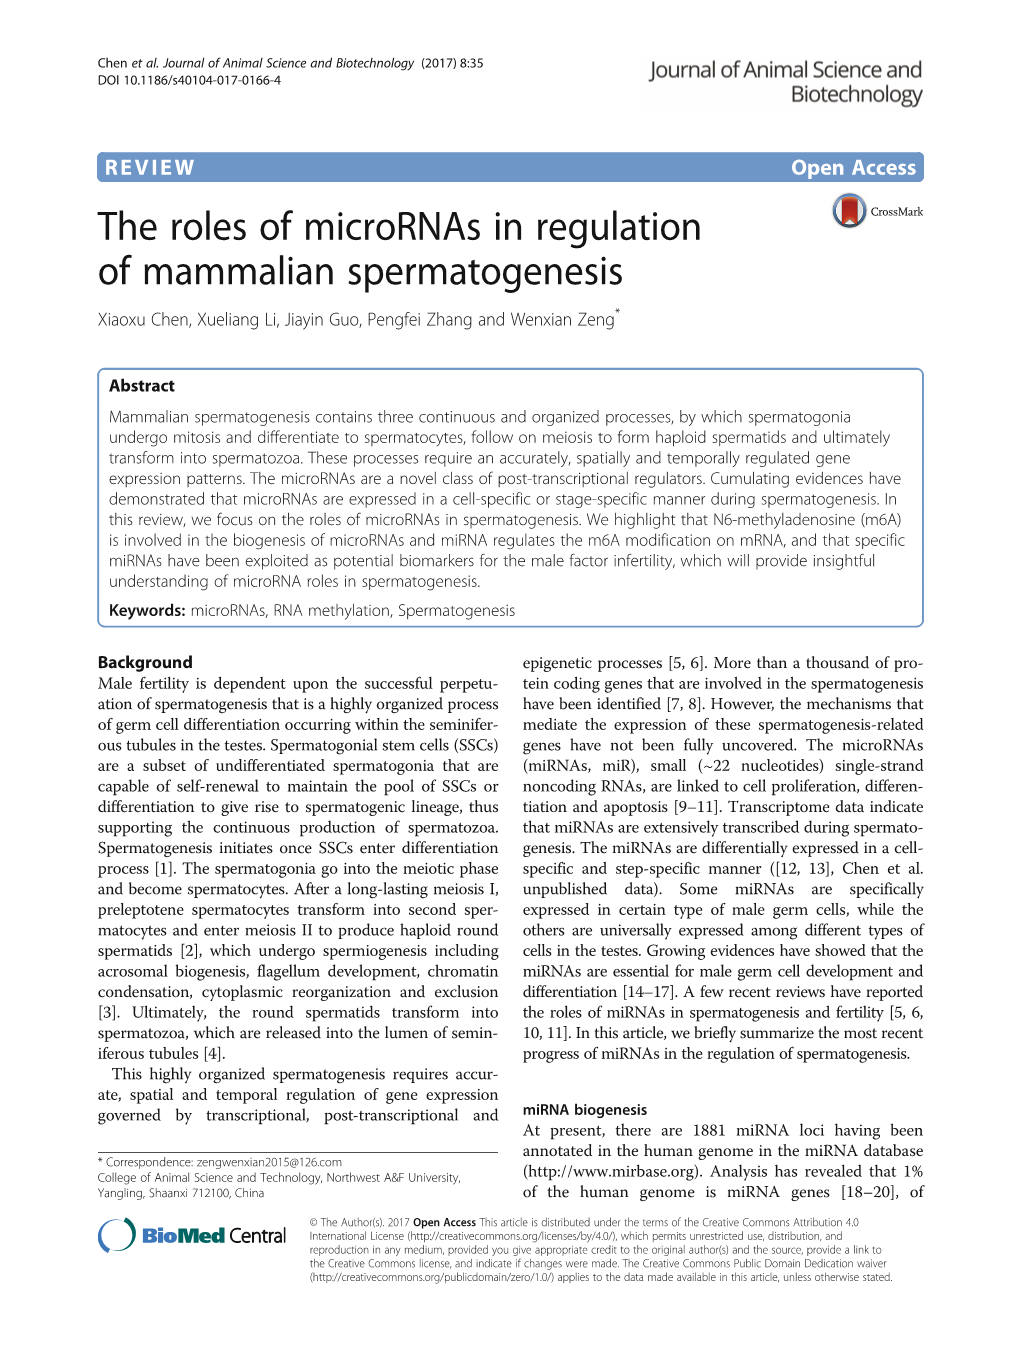 The Roles of Micrornas in Regulation of Mammalian Spermatogenesis Xiaoxu Chen, Xueliang Li, Jiayin Guo, Pengfei Zhang and Wenxian Zeng*